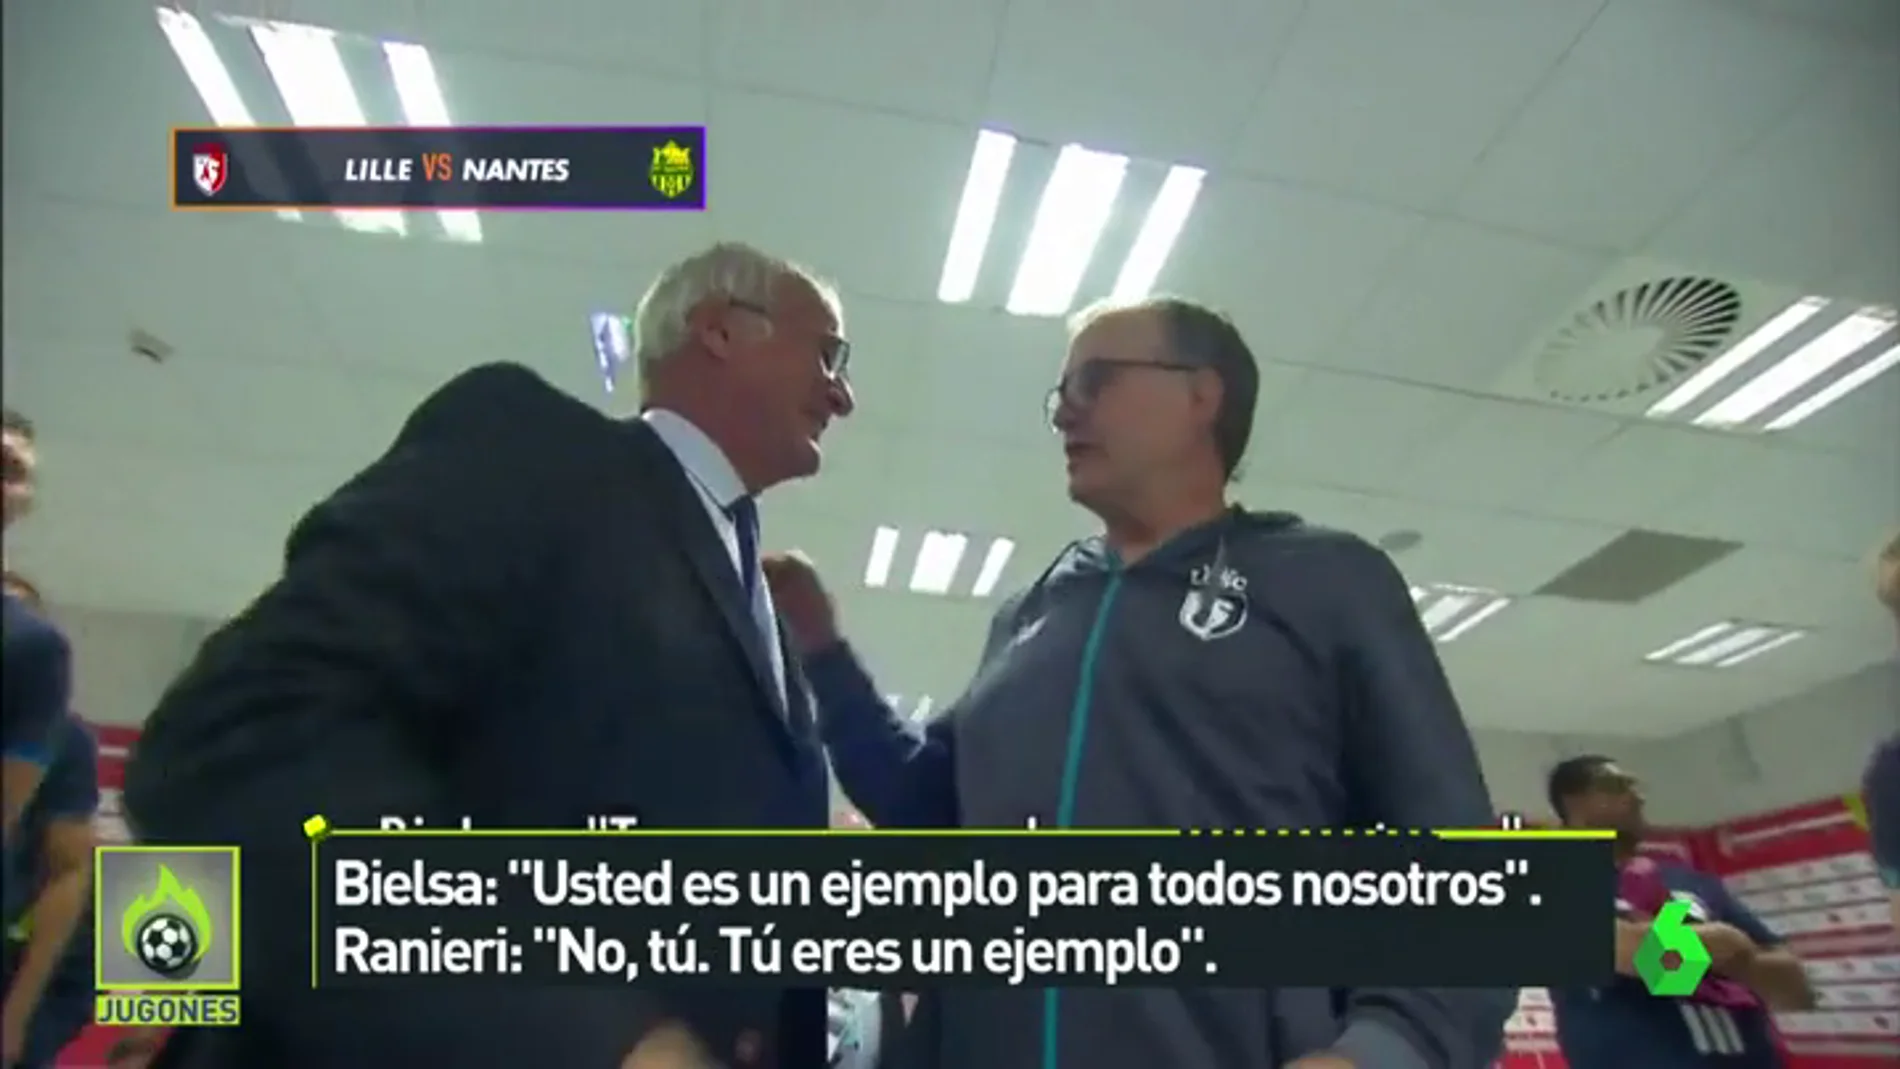 La genial charla entre Ranieri y Bielsa antes de su partido en Francia: "Usted es un ejemplo para todos..."